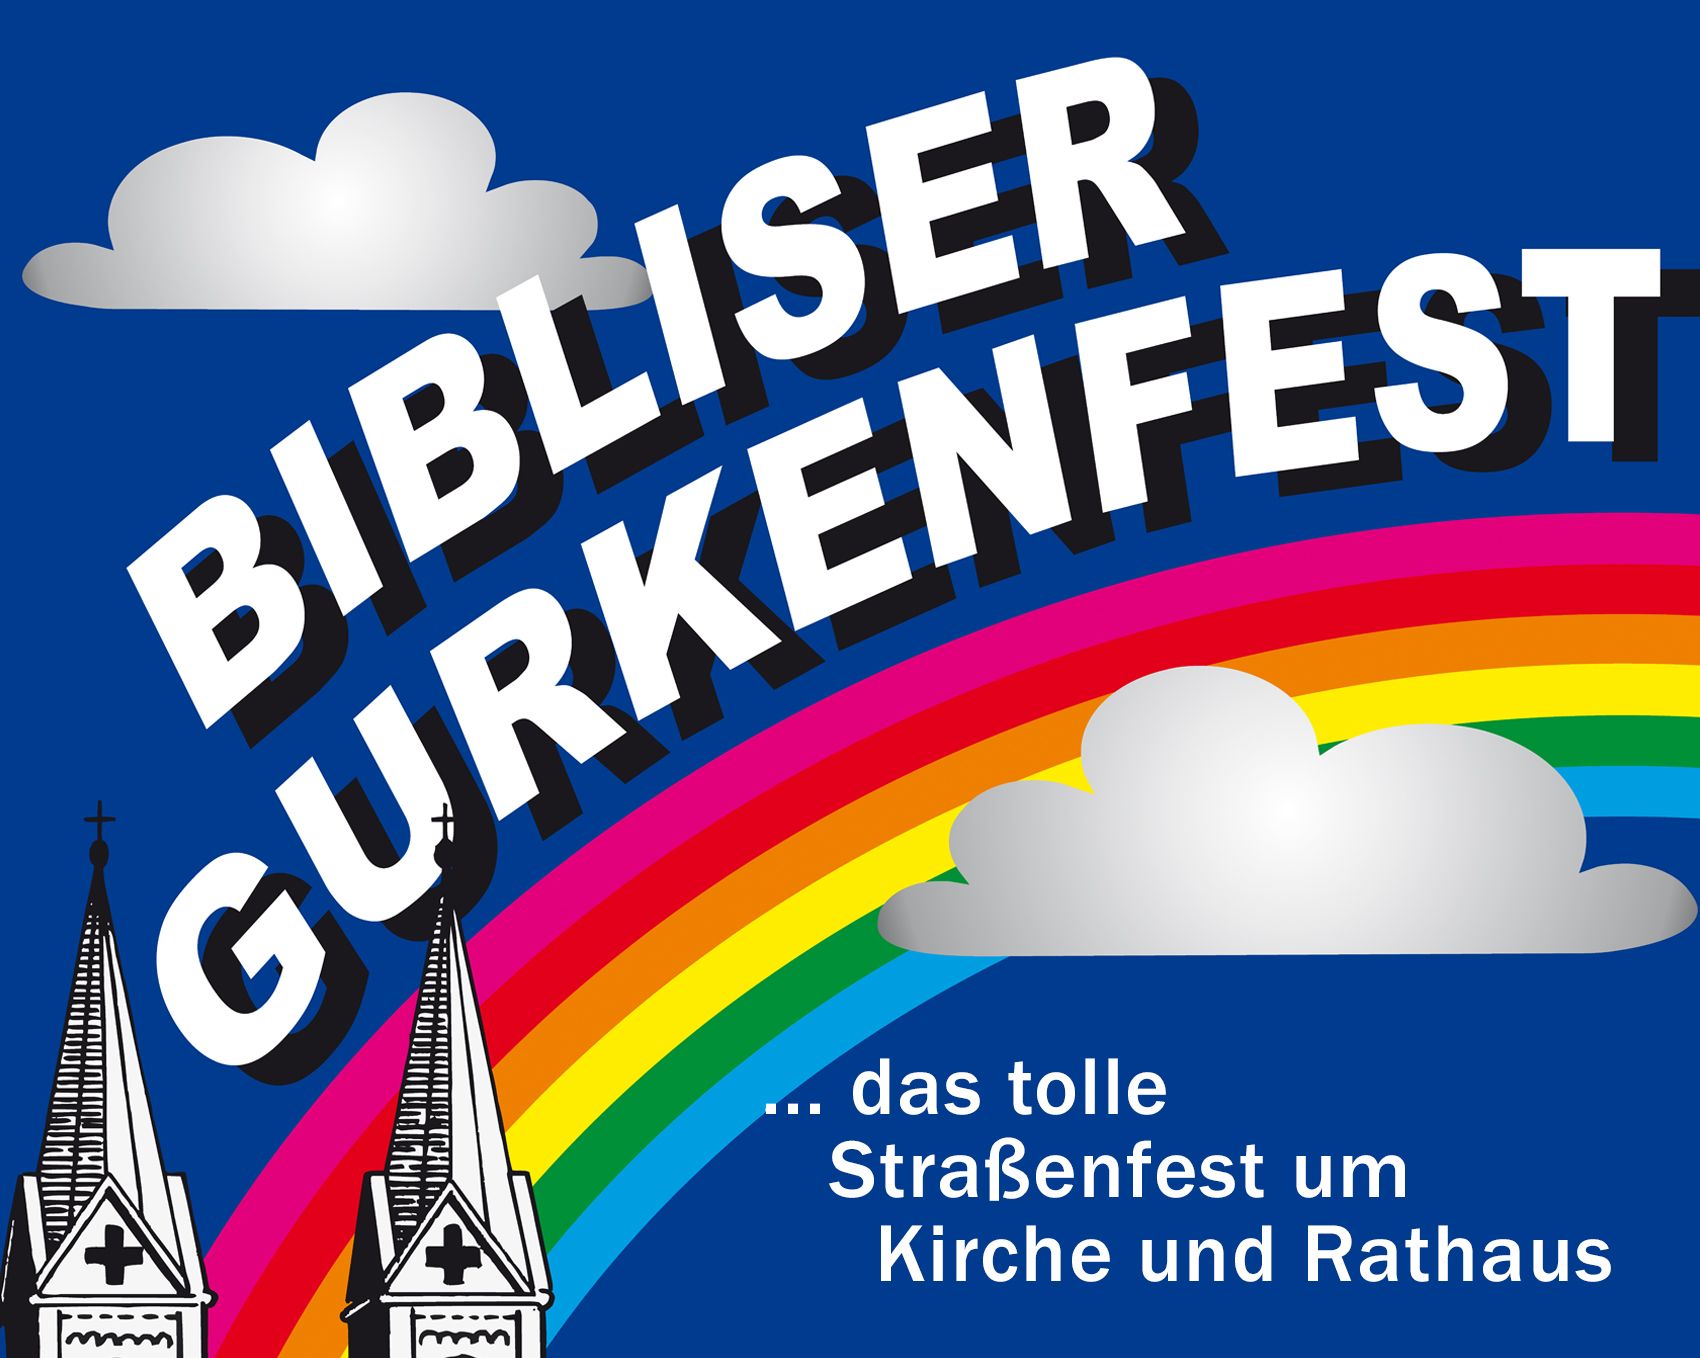 Bibliser Gurkenfest Biblis Fest mit Livemusik Jahrmarkt Straßenfest 